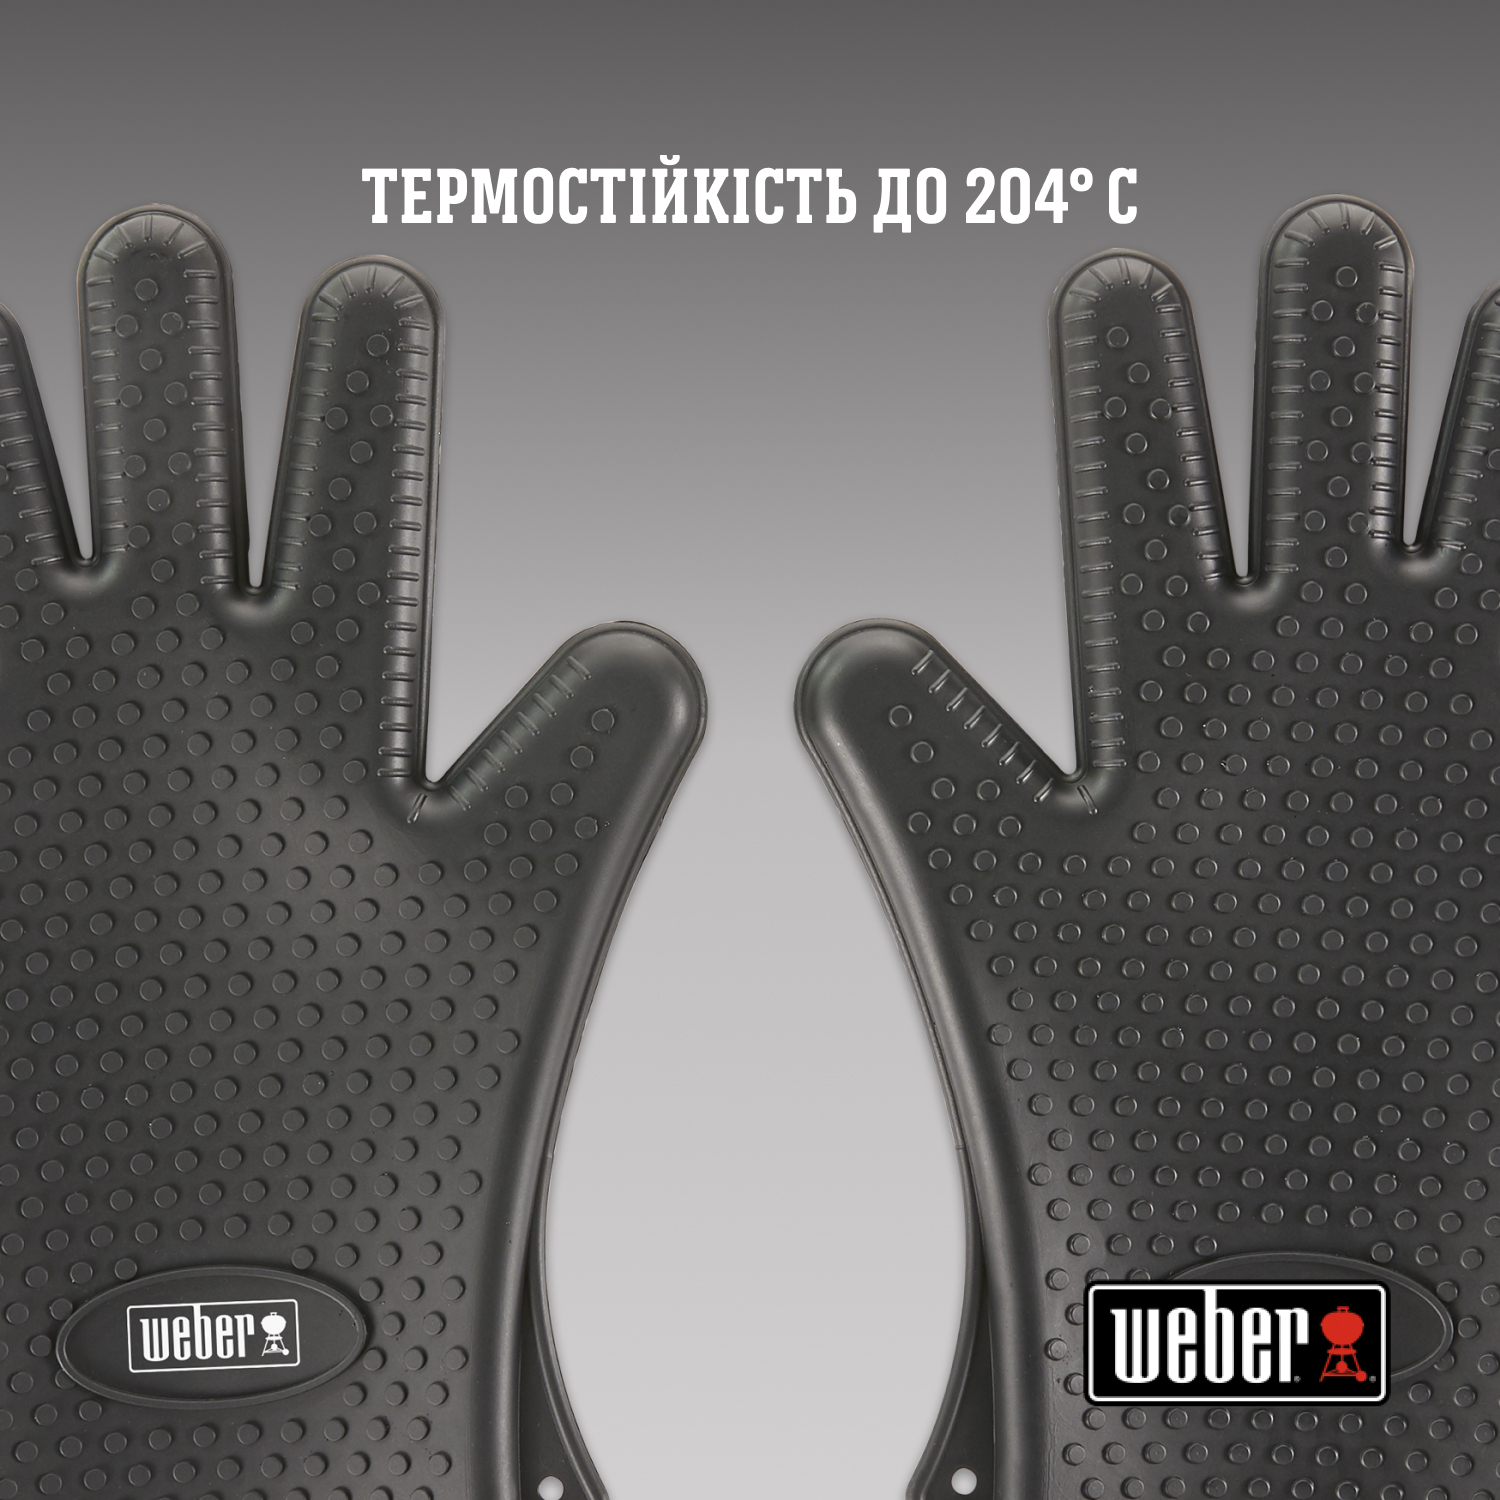 Перчатки Weber для гриля силиконовые черные (7017) - фото 3